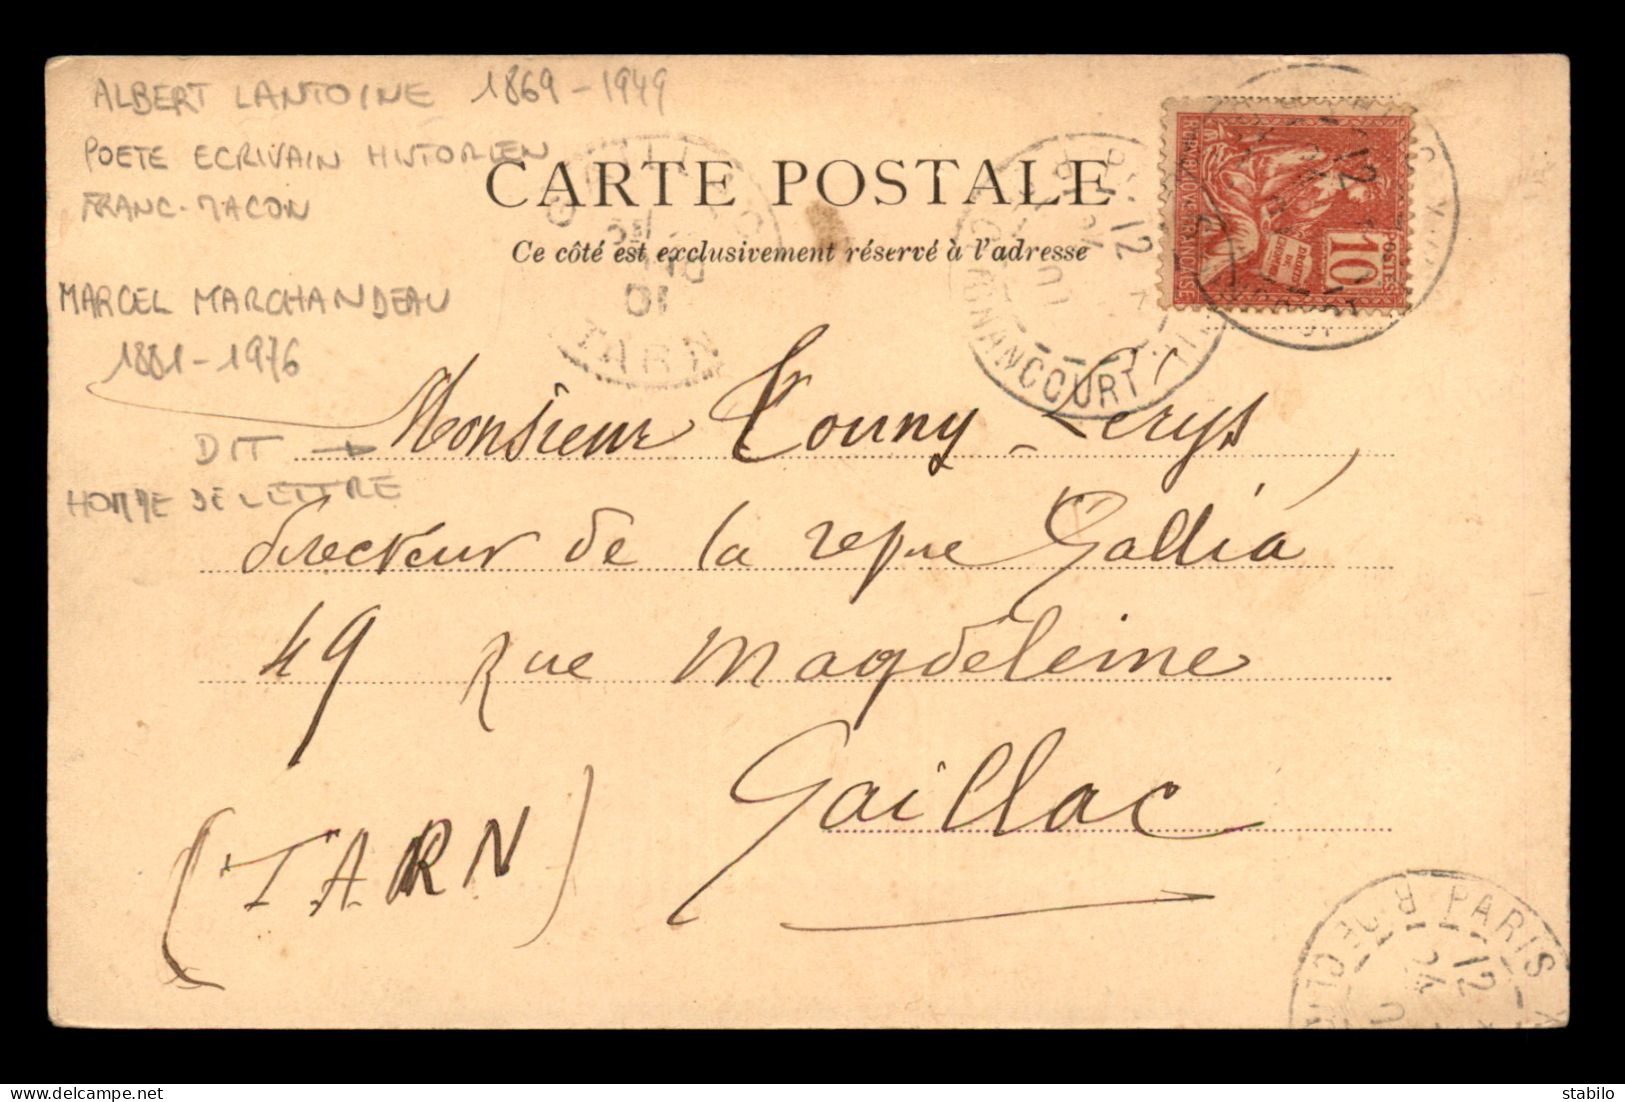 AUTOGRAPHE - ALBERT LANTOINE (1869-1949) POETE, FRANC-MACON A MARCEL MARCHANDEAU DIT TOUNY LERYS, POETE - Autres & Non Classés